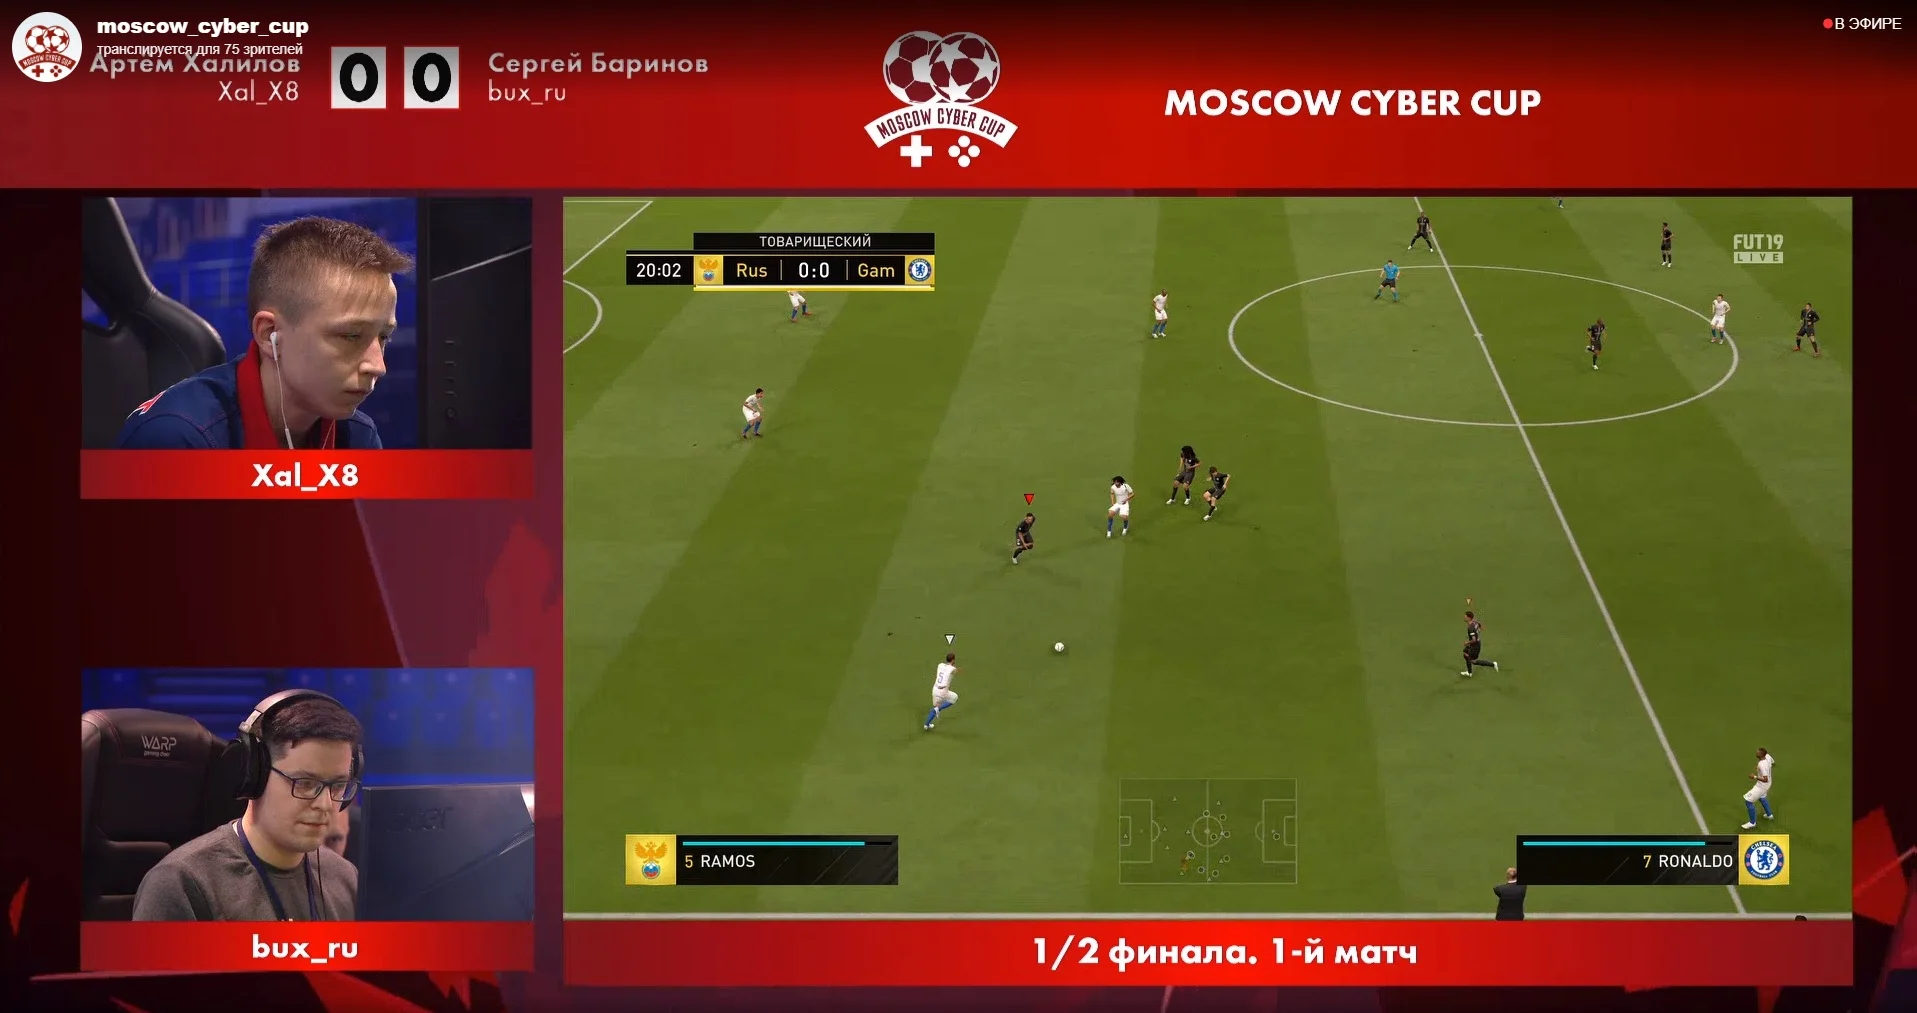 На московский турнир по FIFA 19 с бюджетом 30 млн пришло несколько человек, на Twitch 80 зрителей - фото 3